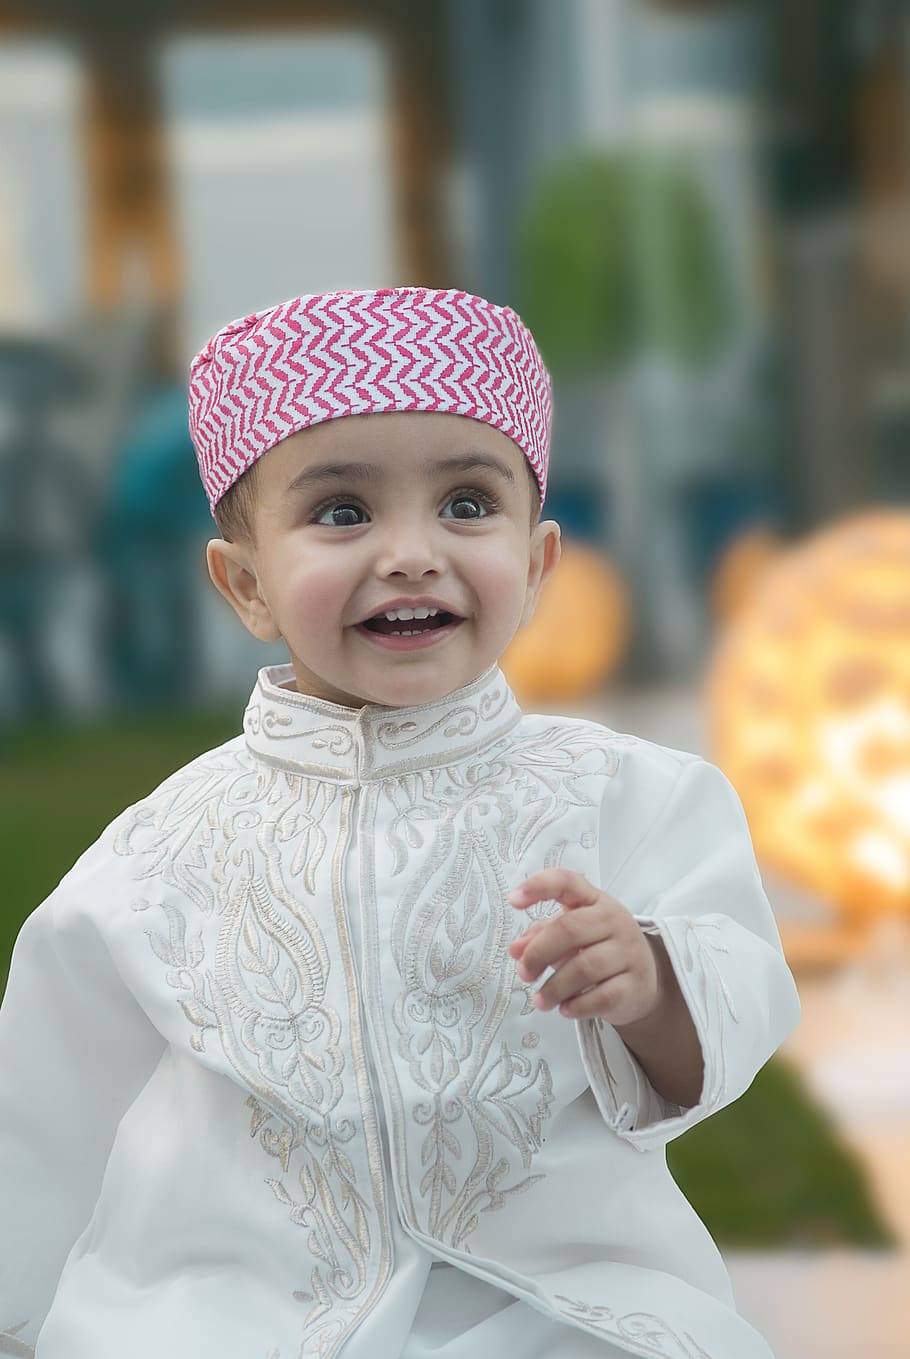 niños, eid mubarak, musulmán, lindo, niño, cultura, retrato, sonriente, sonrisa, poco